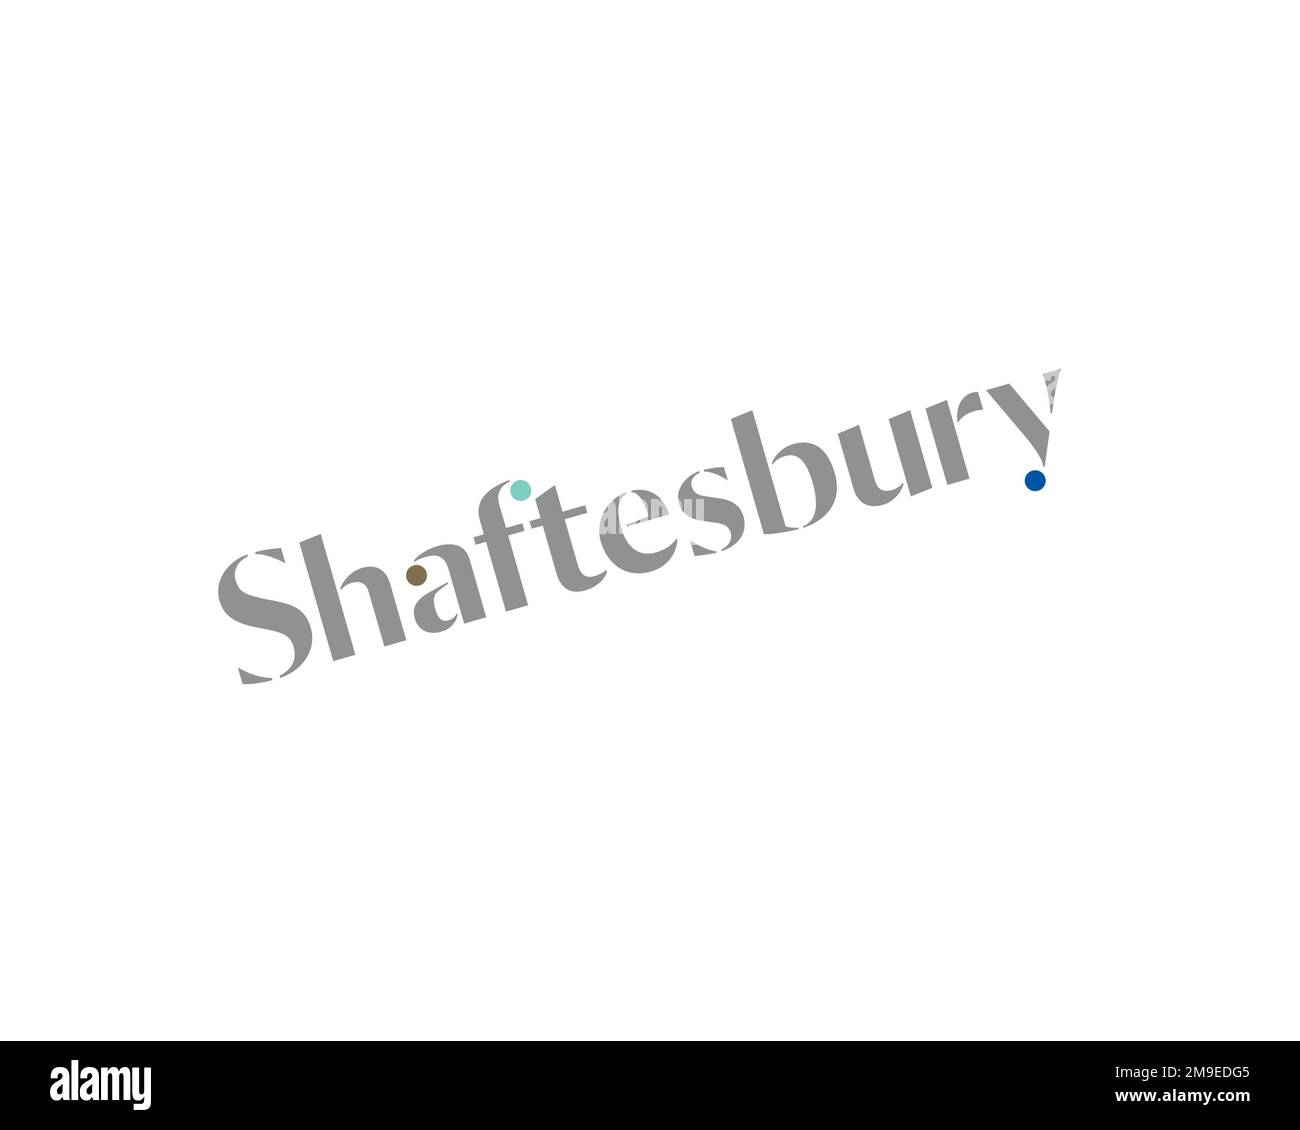 Shaftesbury plc, rotated logo, white background Stock Photo - Alamy